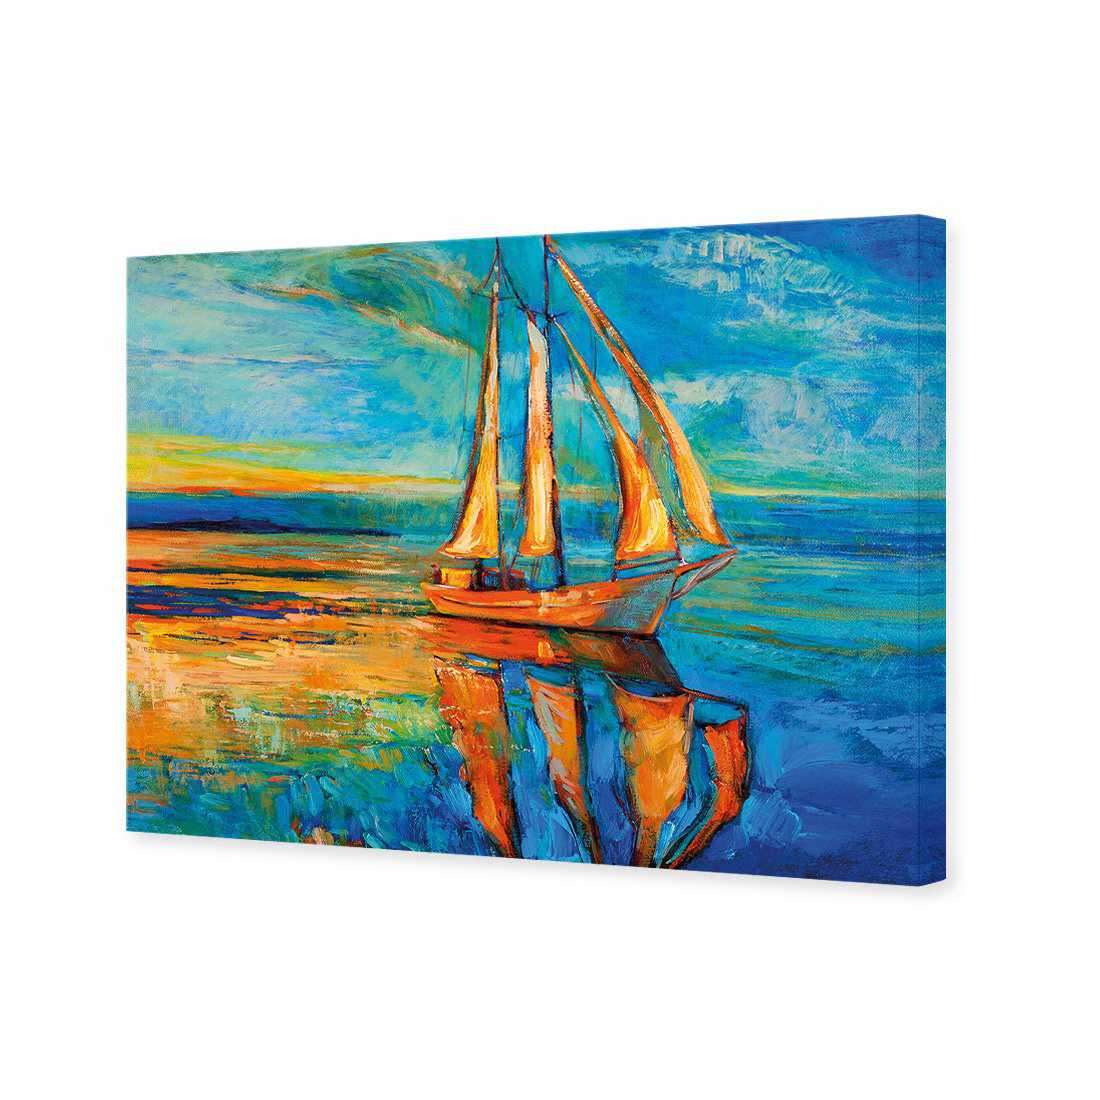 Sailing Boat Reflected Canvas Art-Canvas-Wall Art Designs-45x30cm-Canvas - No Frame-Wall Art Designs